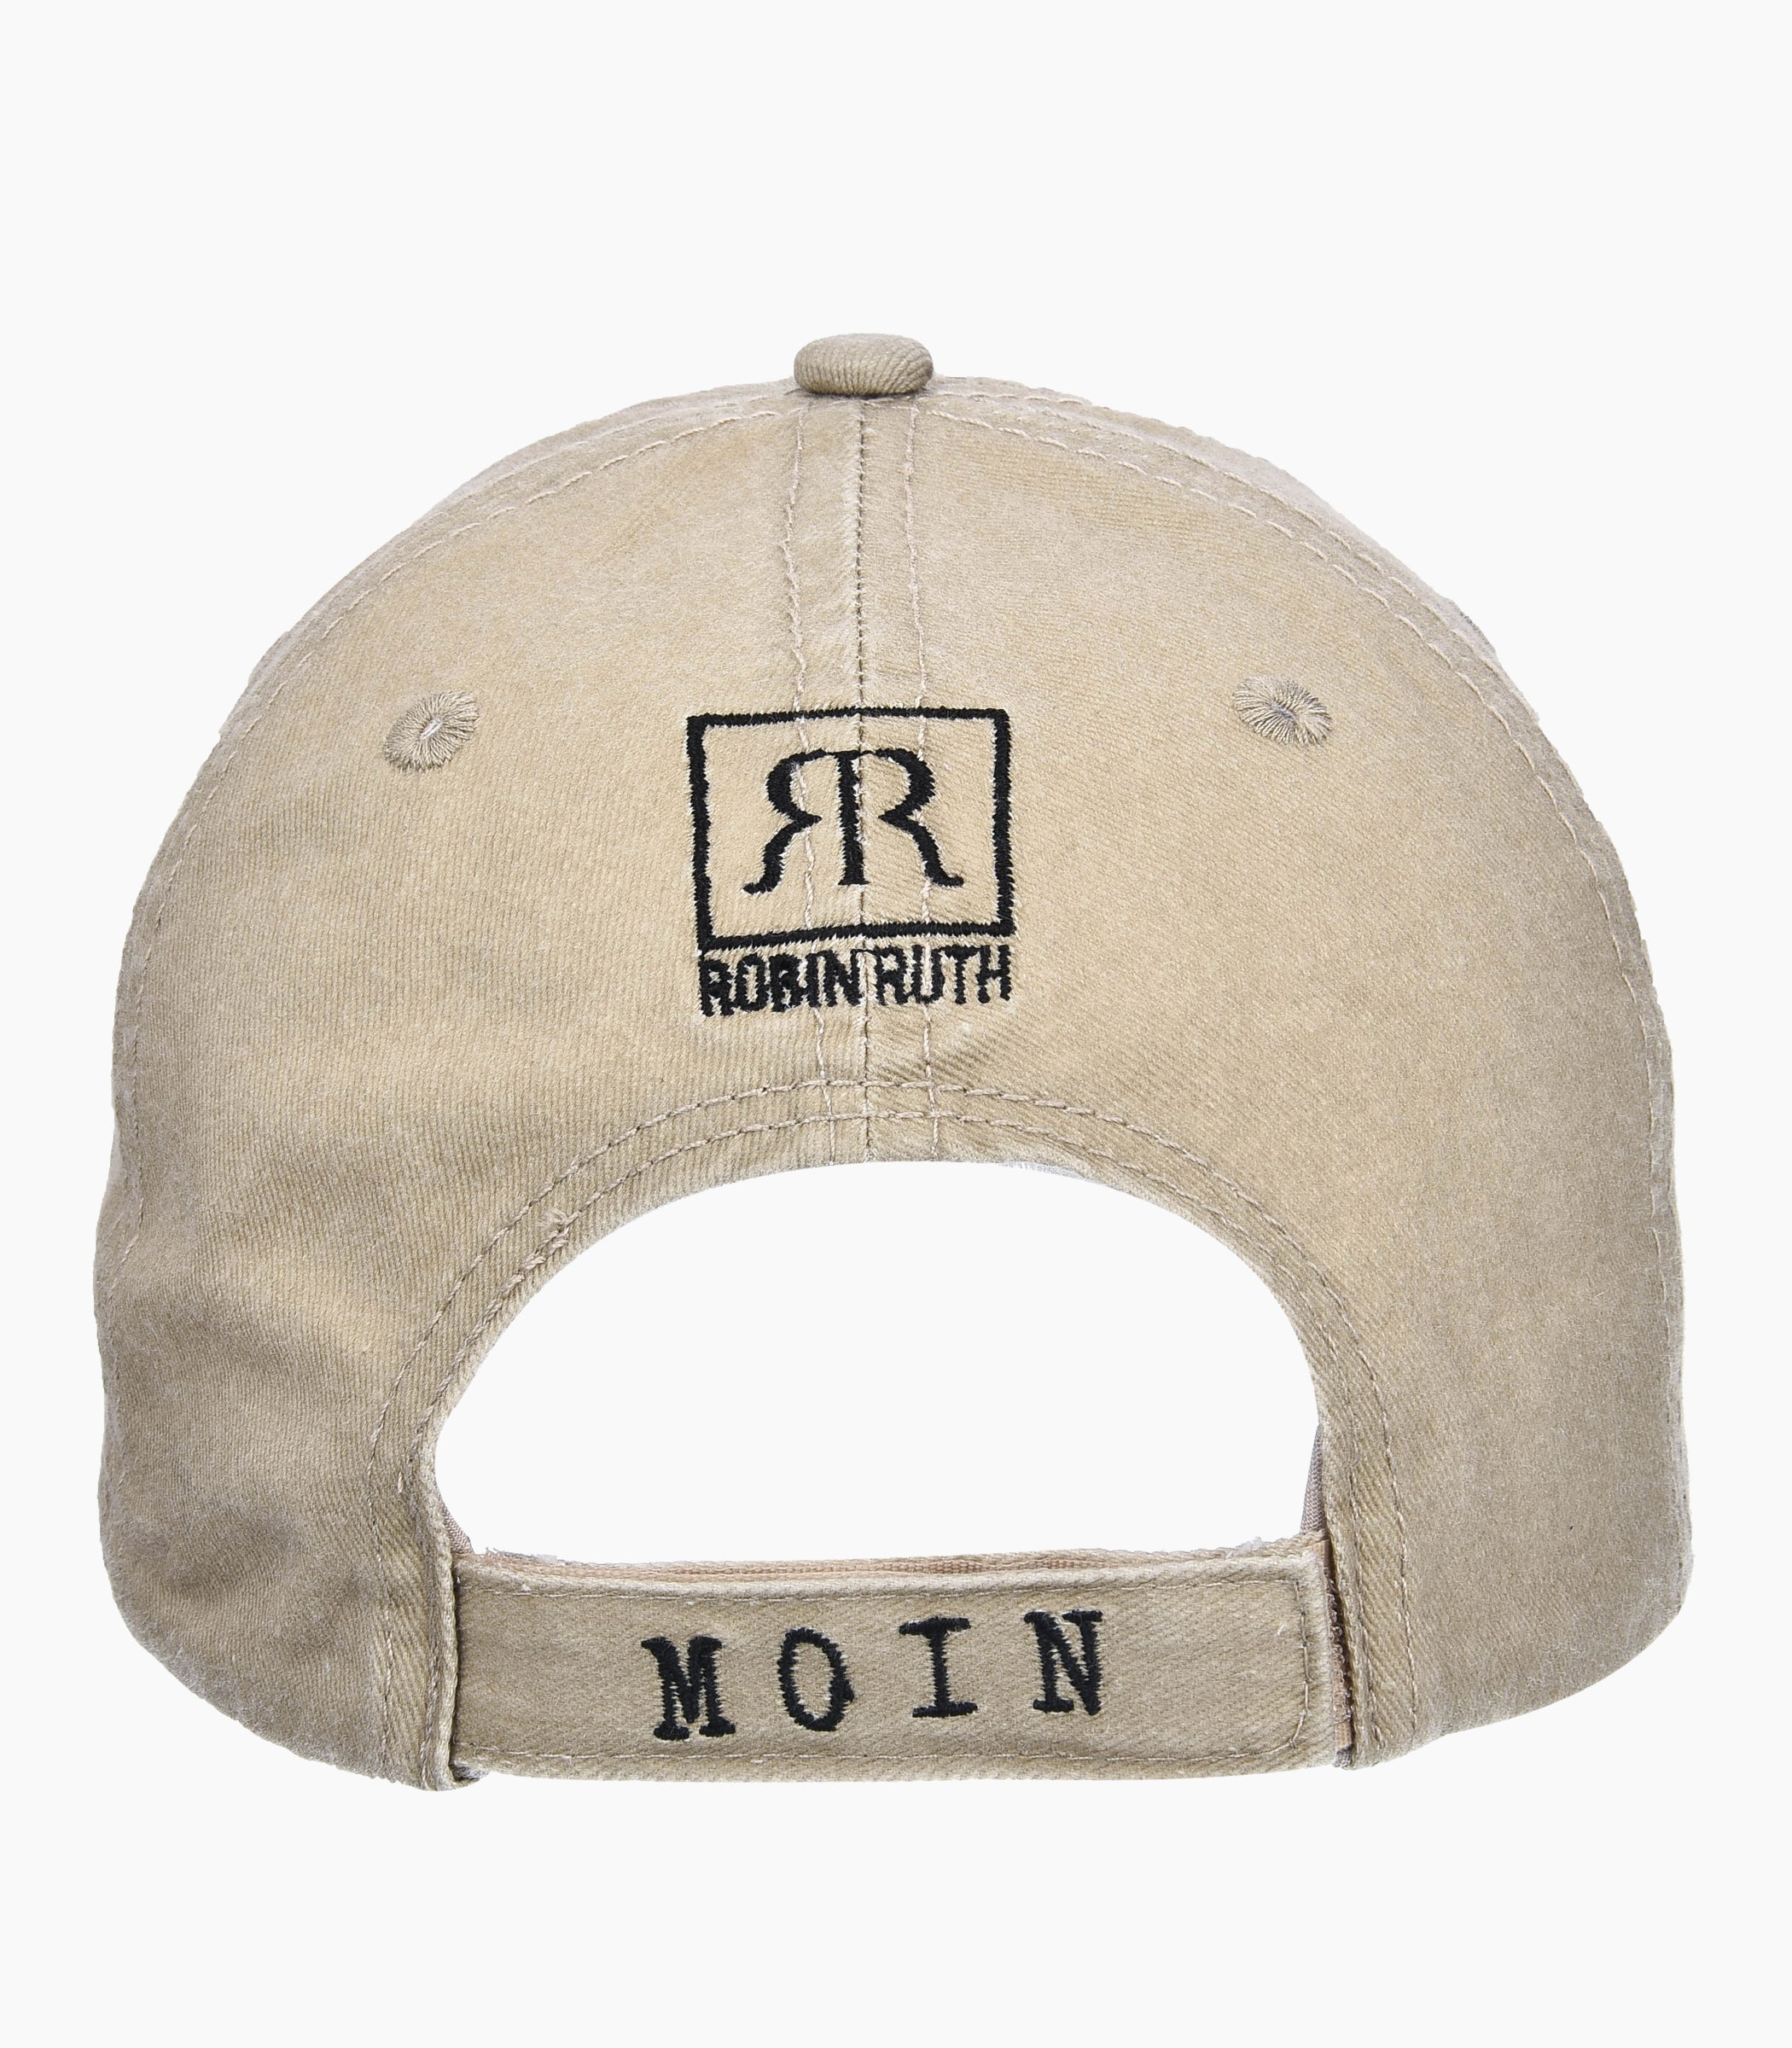 Moin Moin Cap - Robin Ruth